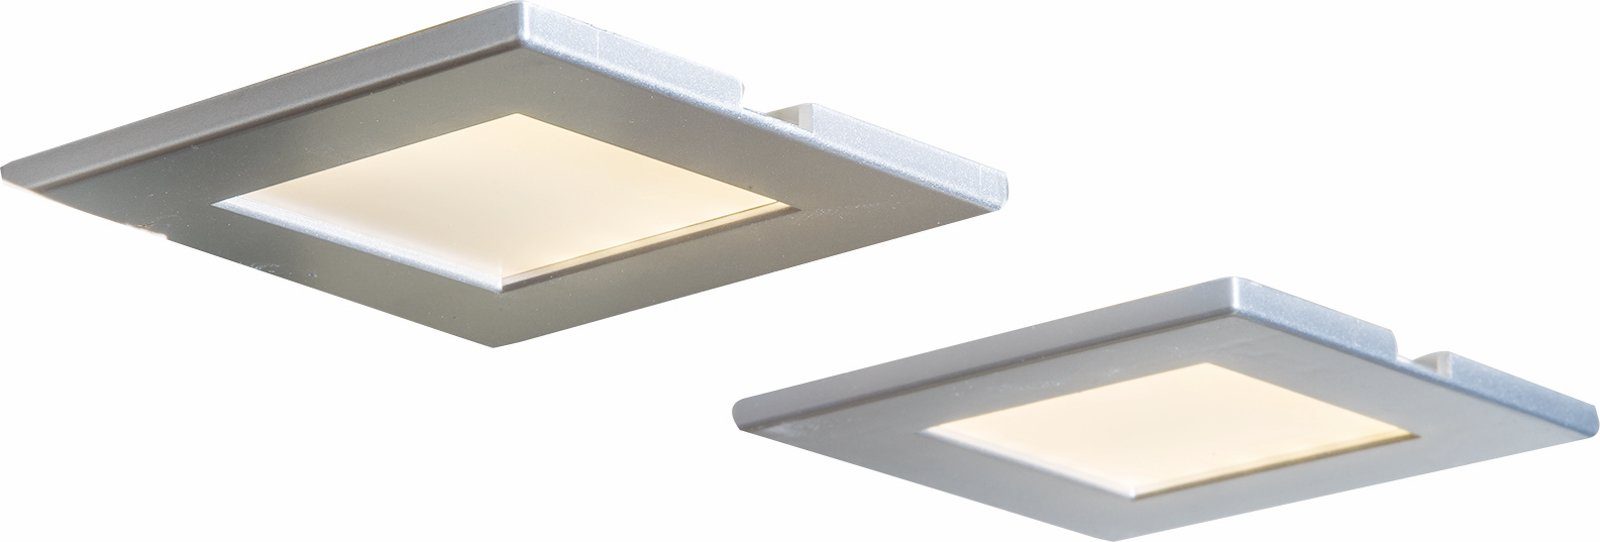 bmf-versand Deckenleuchte Nino Leuchten Deckenleuchte LED Einbau Unterbauleuchte Deckenstrahler